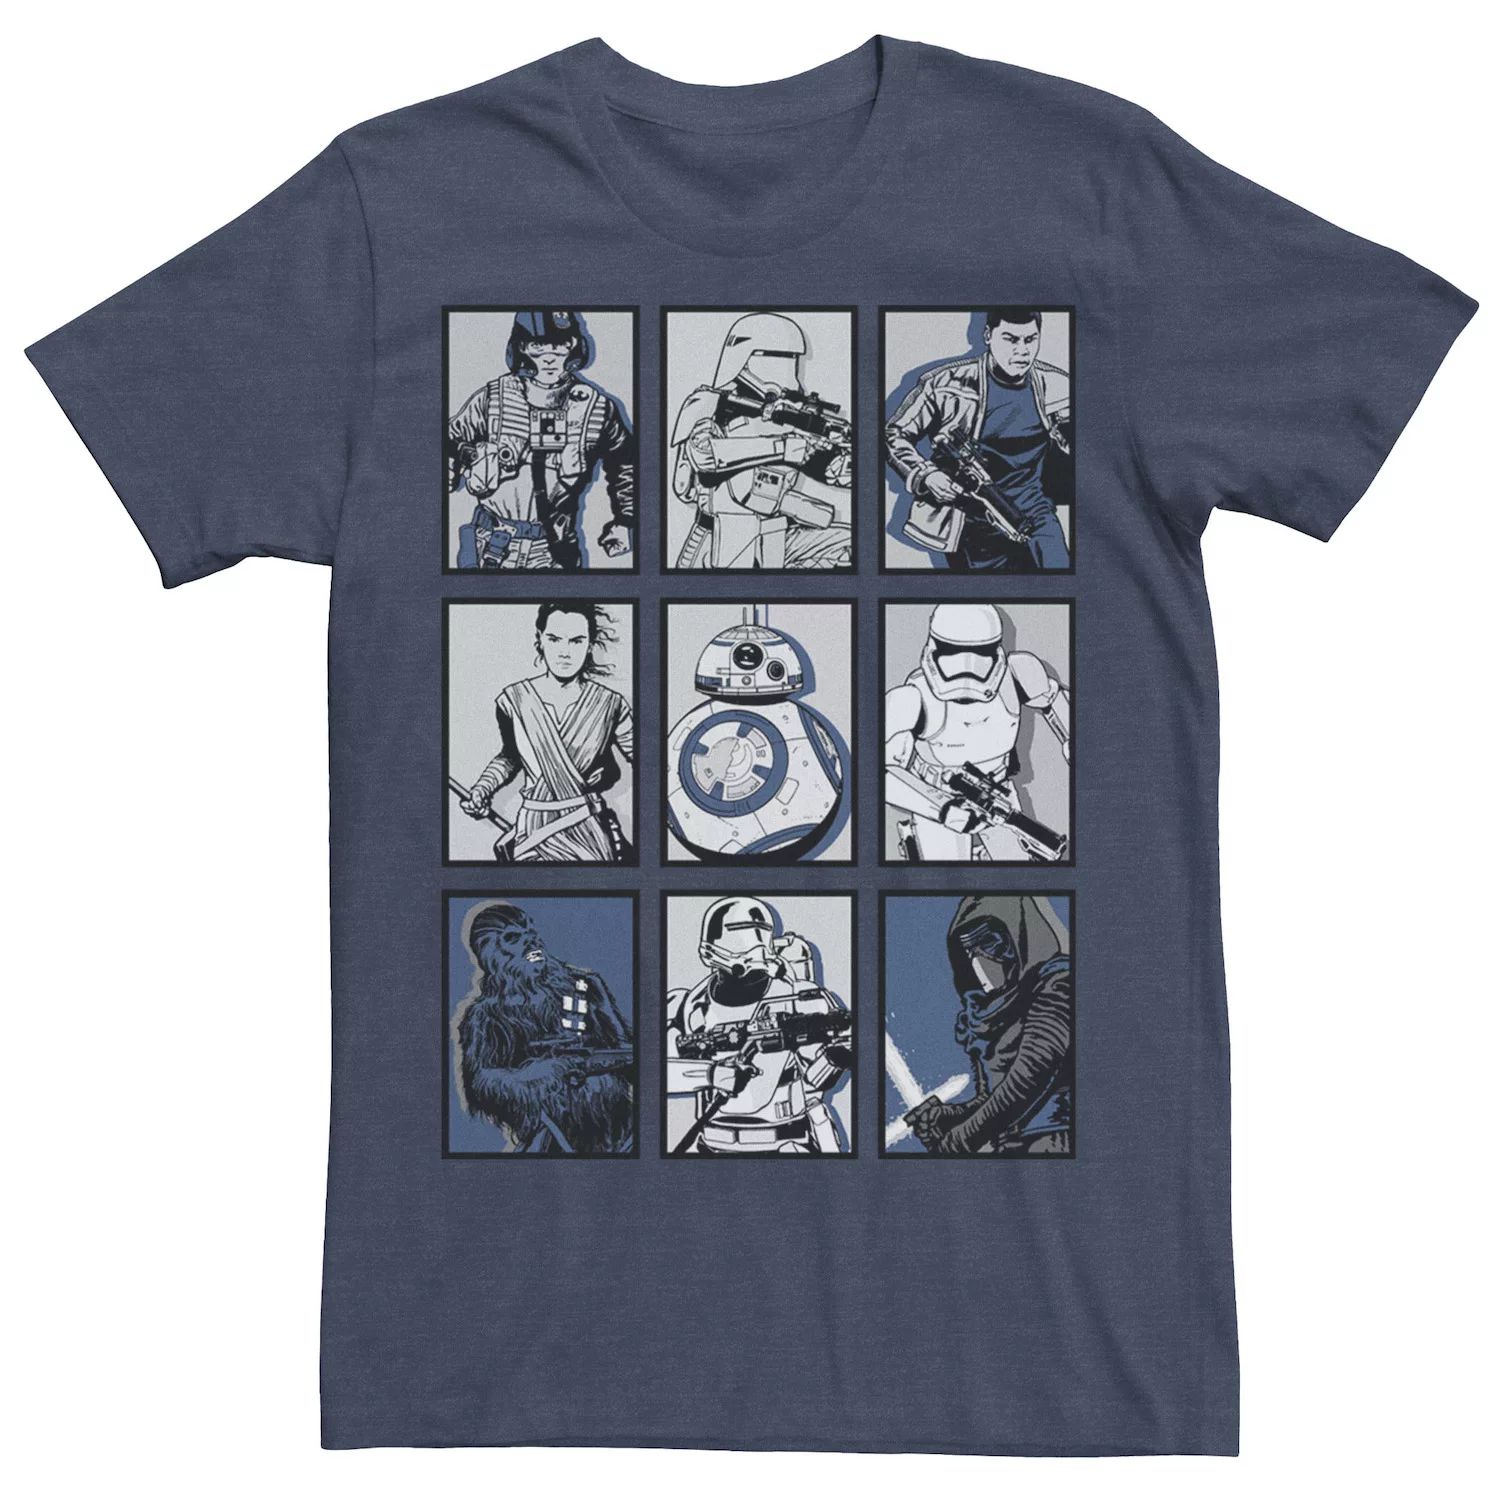 Мужская футболка с графическим плакатом и плакатом «Пробуждение Силы» Star Wars мужская классическая футболка с графическим плакатом rebel white star wars белый